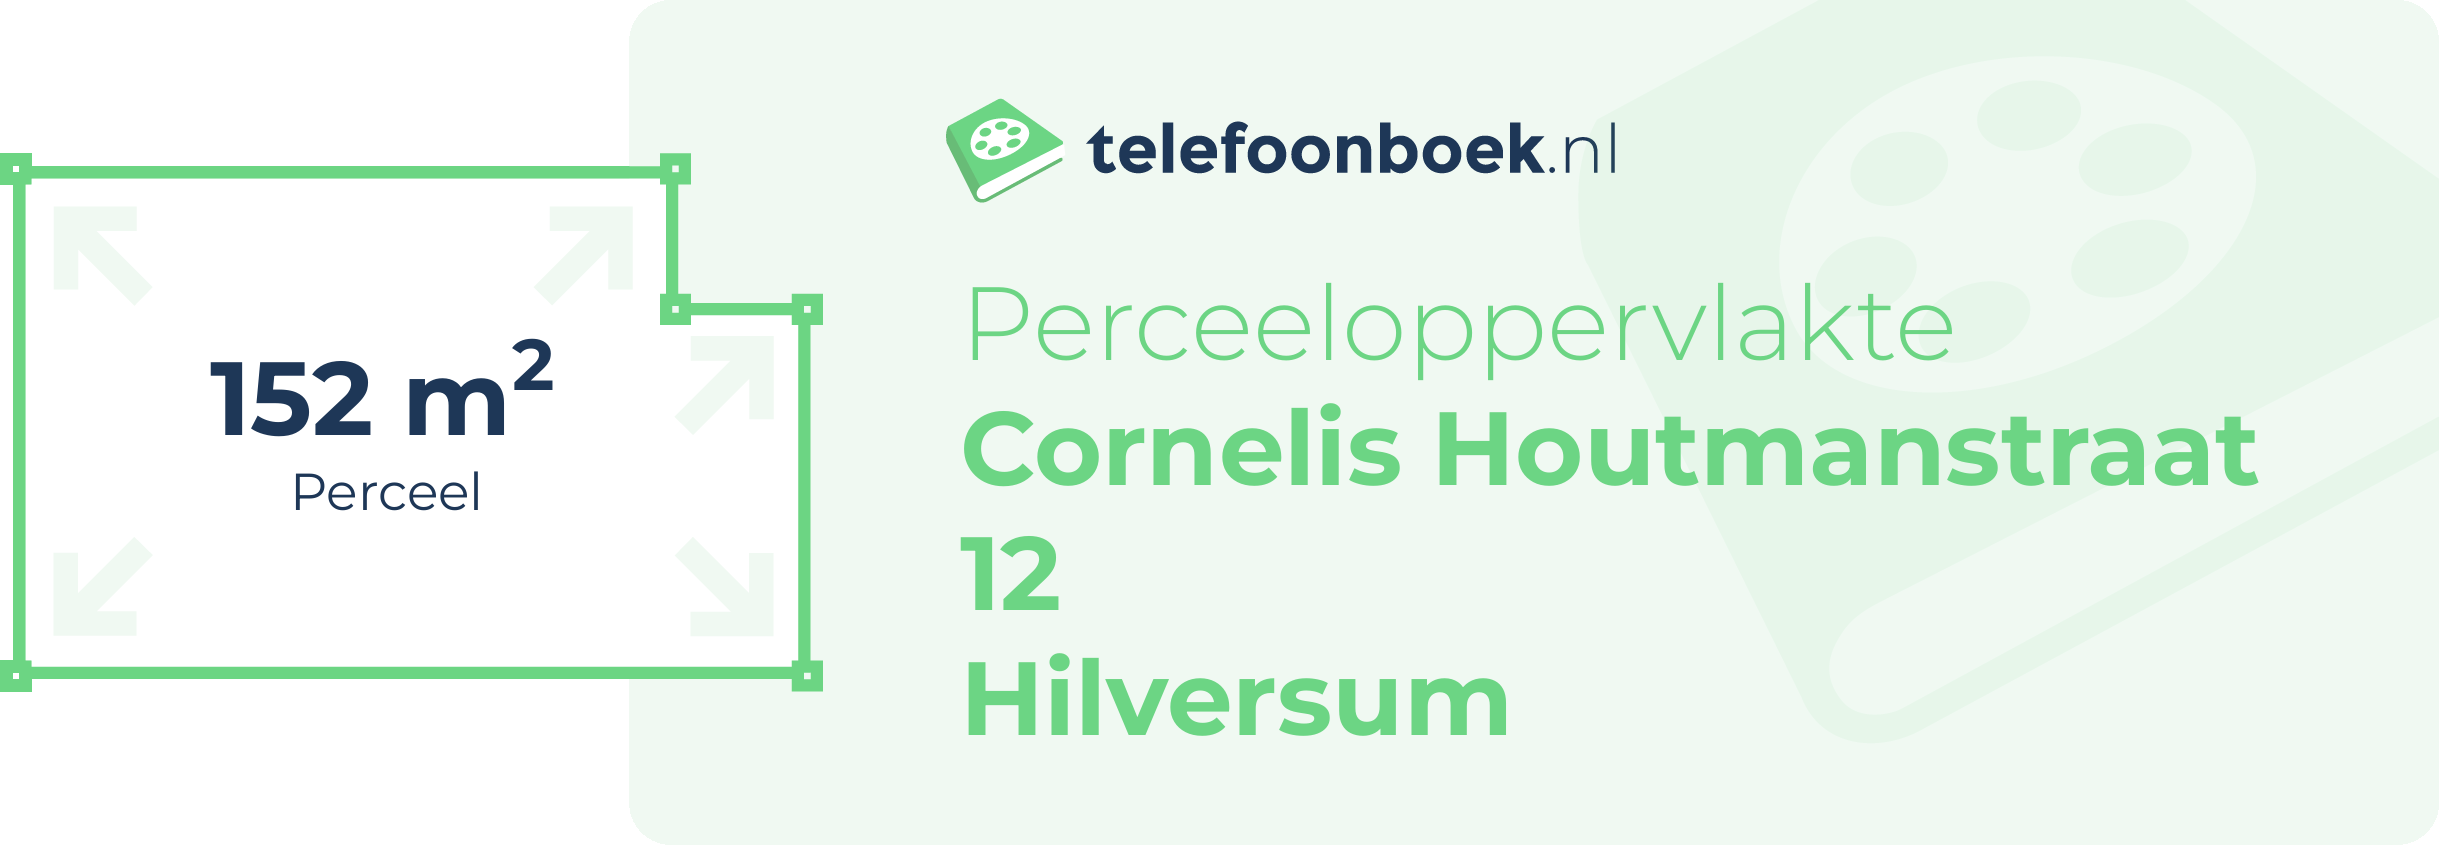 Perceeloppervlakte Cornelis Houtmanstraat 12 Hilversum